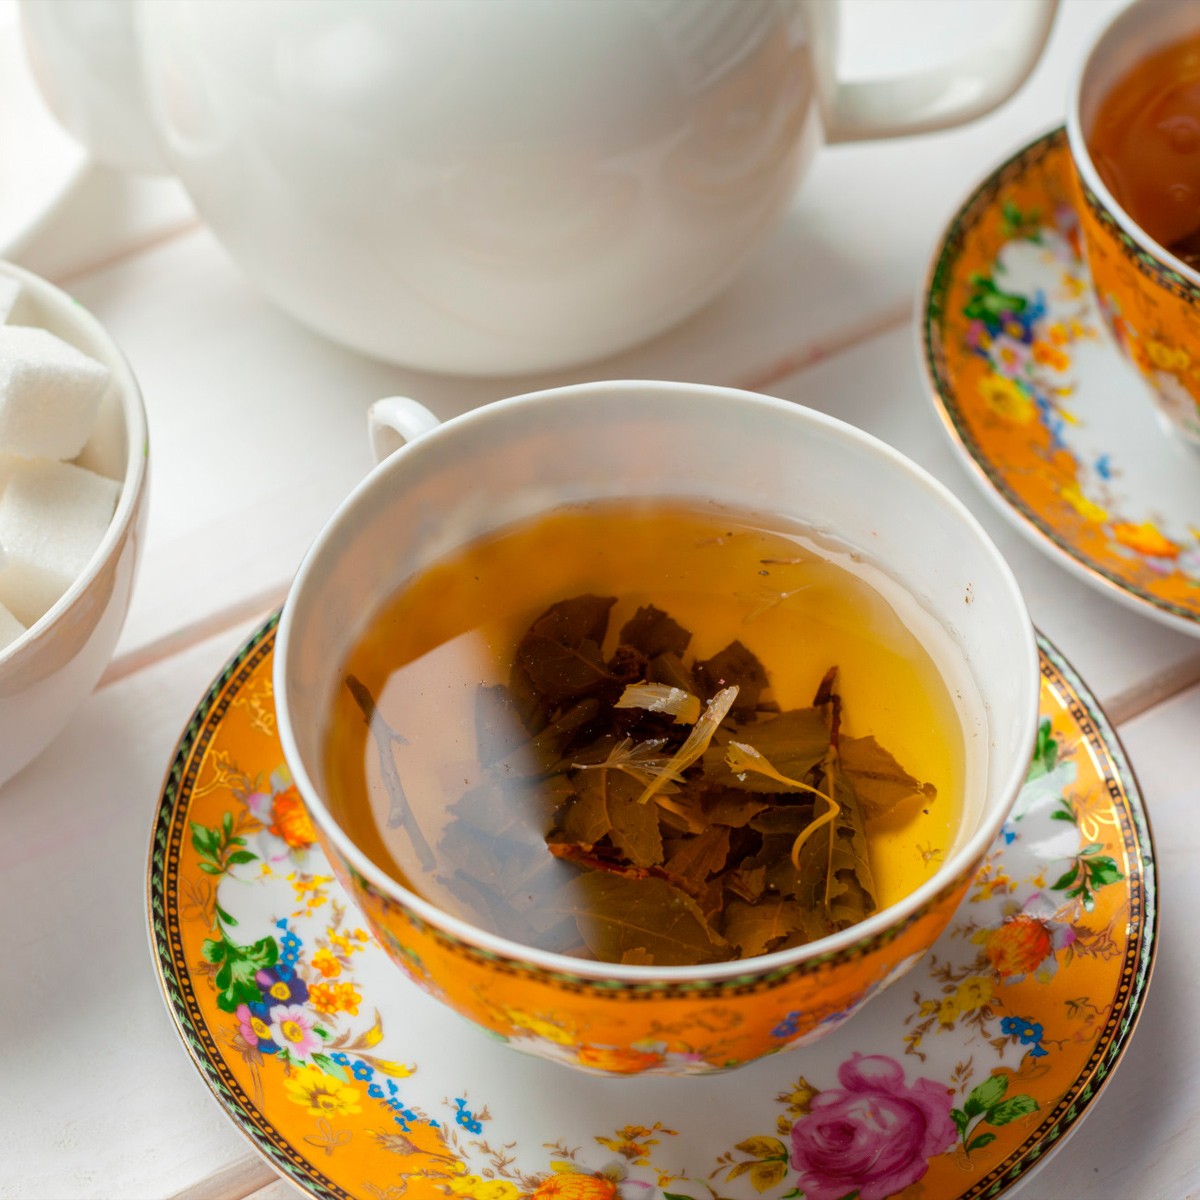 Chá de Erva de Touro - Tridax Procumbens - 100g